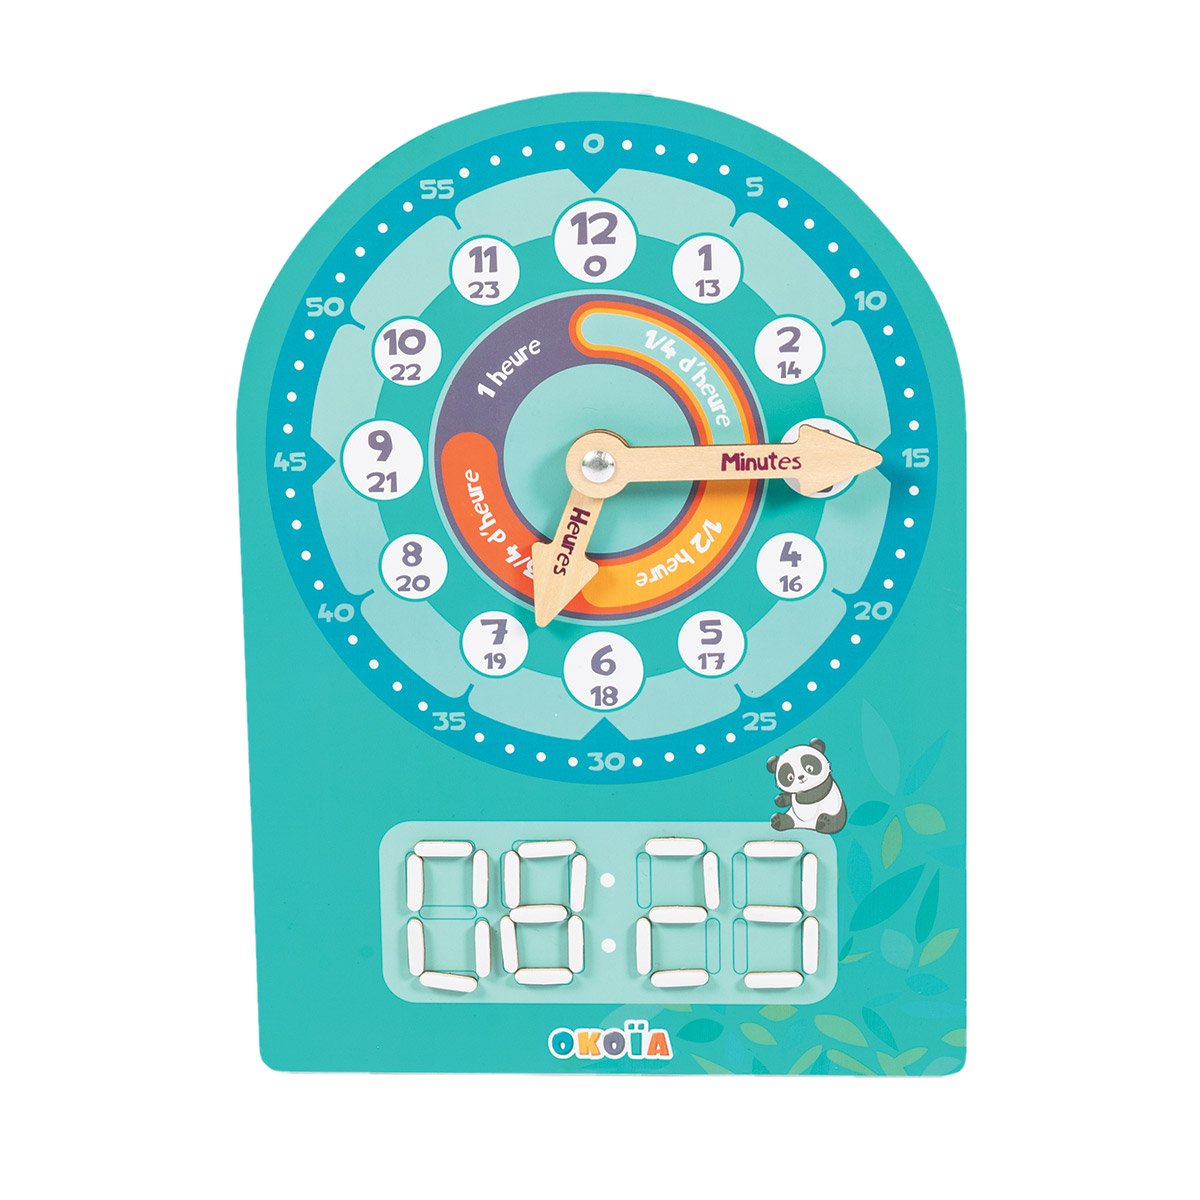 Les horloges éducatives pour les enfants dès 3 ans